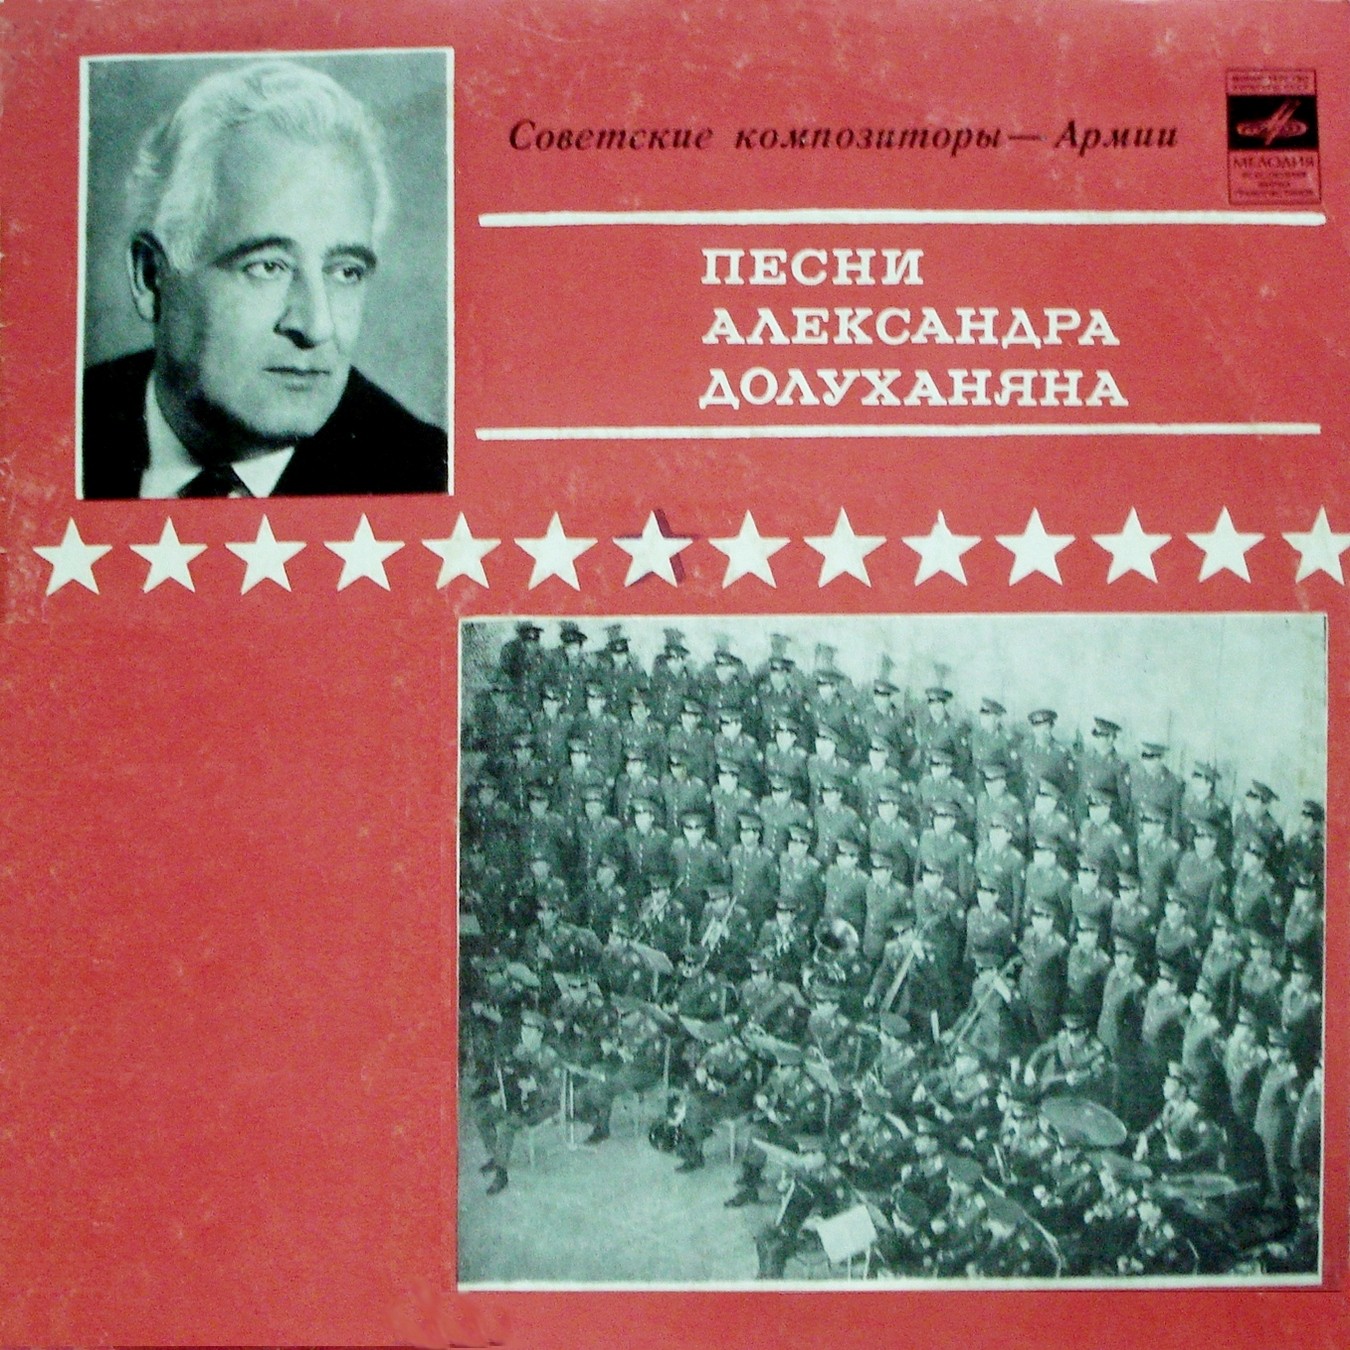 Песни Александра ДОЛУХАНЯНА (1910–1968): Из цикла "Советские композиторы – Армии"